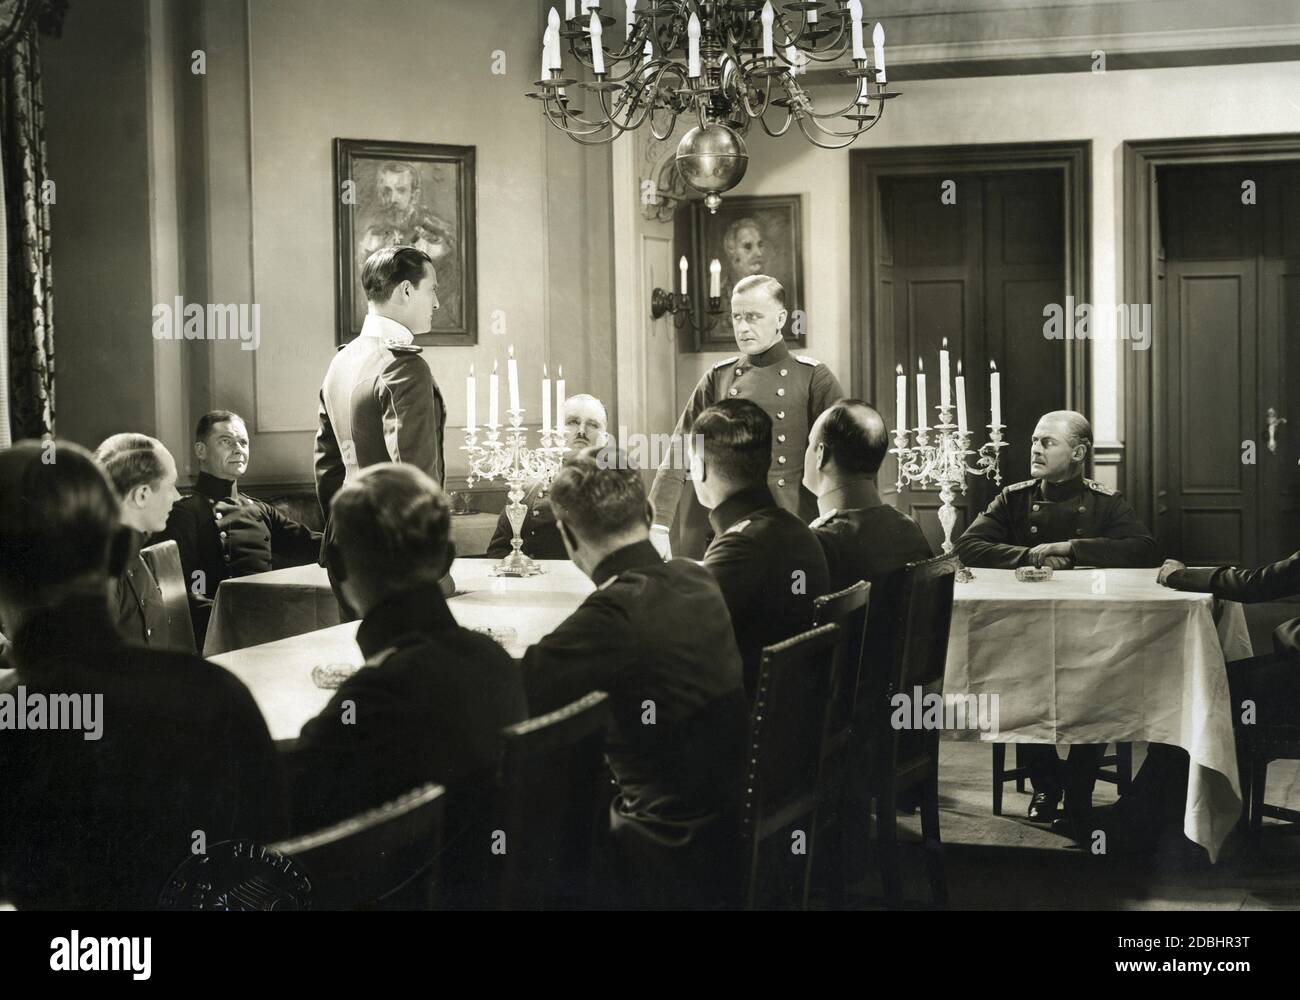 Soldats de l'armée allemande à une table. Filmez toujours. Banque D'Images